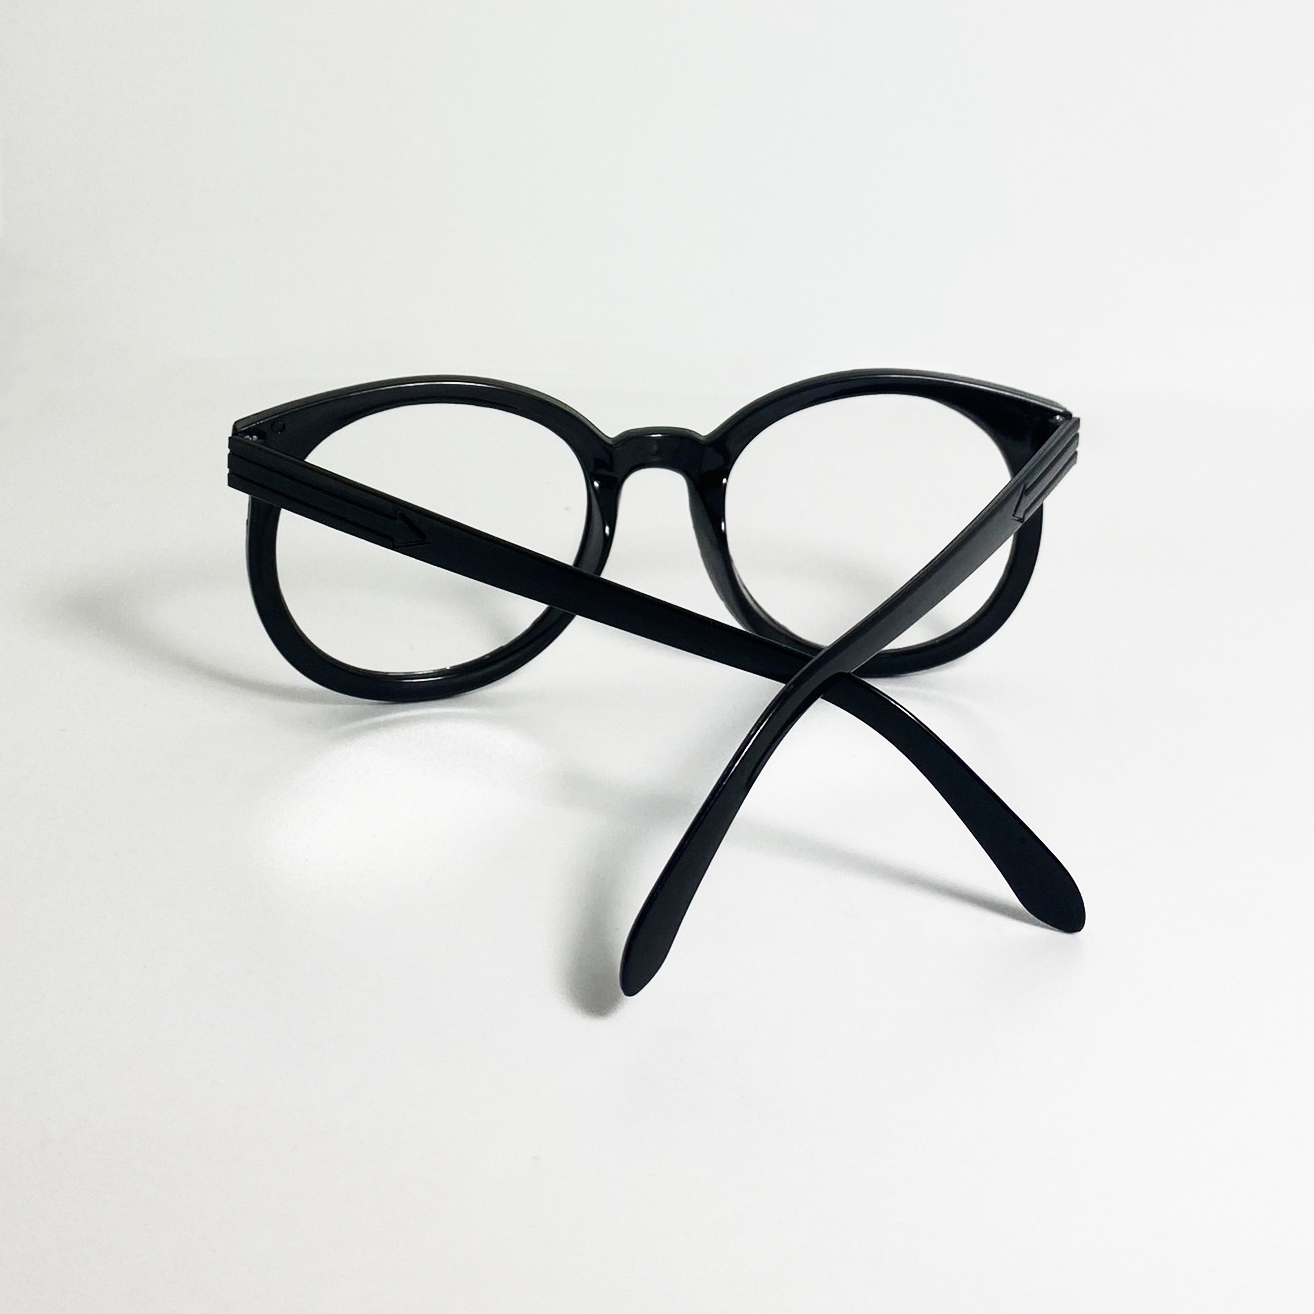 Gọng kính cận nam nữ Jun Secret chất liệu nhựa cao cấp, kiểu kình hình tròn đơn giản thời trang JS90A08